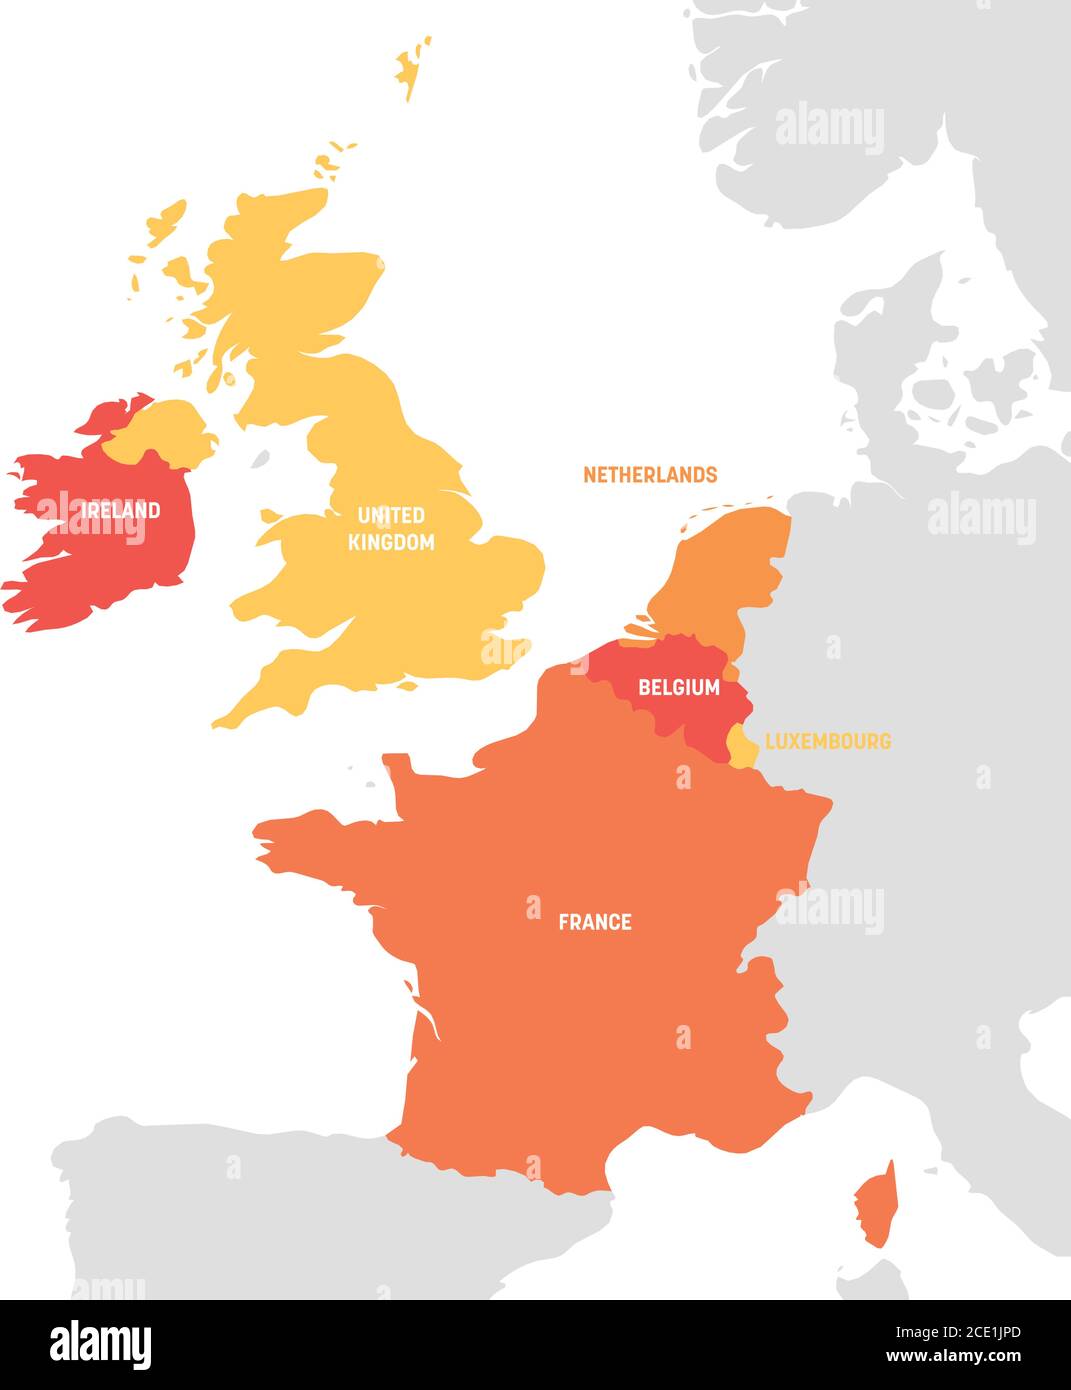 Région de l'Europe de l'Ouest. Carte des pays d'Europe occidentale. Illustration vectorielle. Illustration de Vecteur